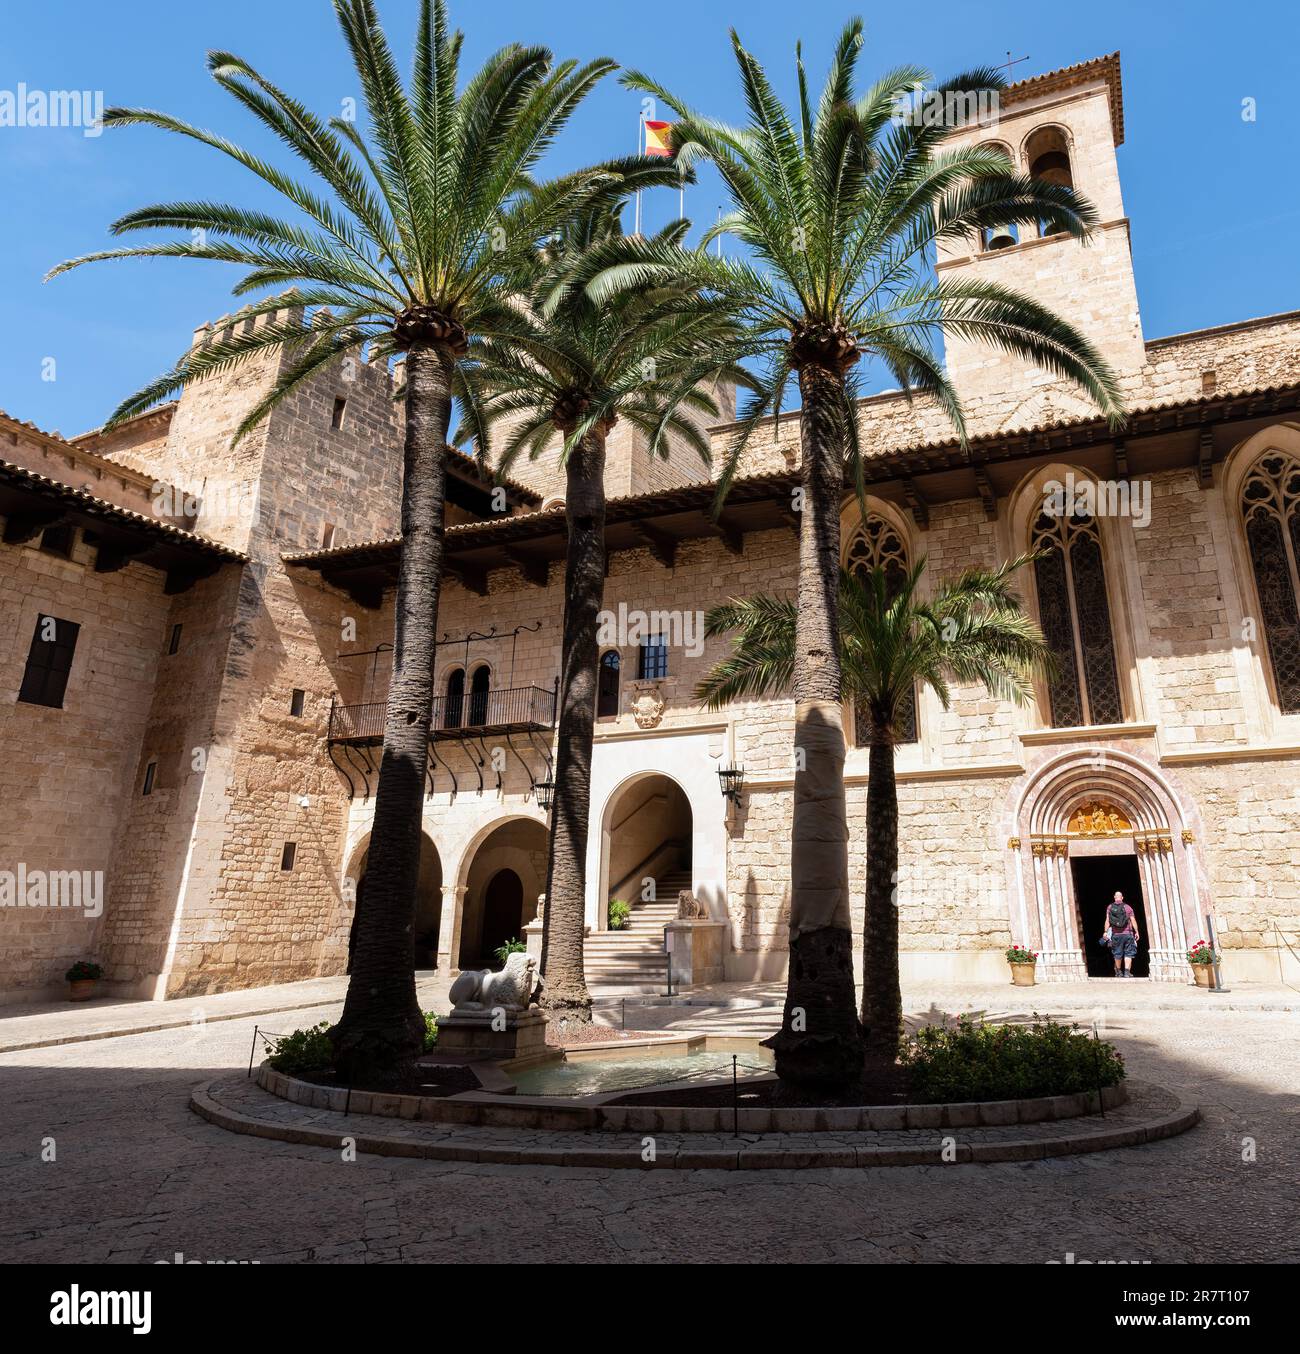 Cour du palais Almudaina à Palma de Majorque, Espagne Banque D'Images